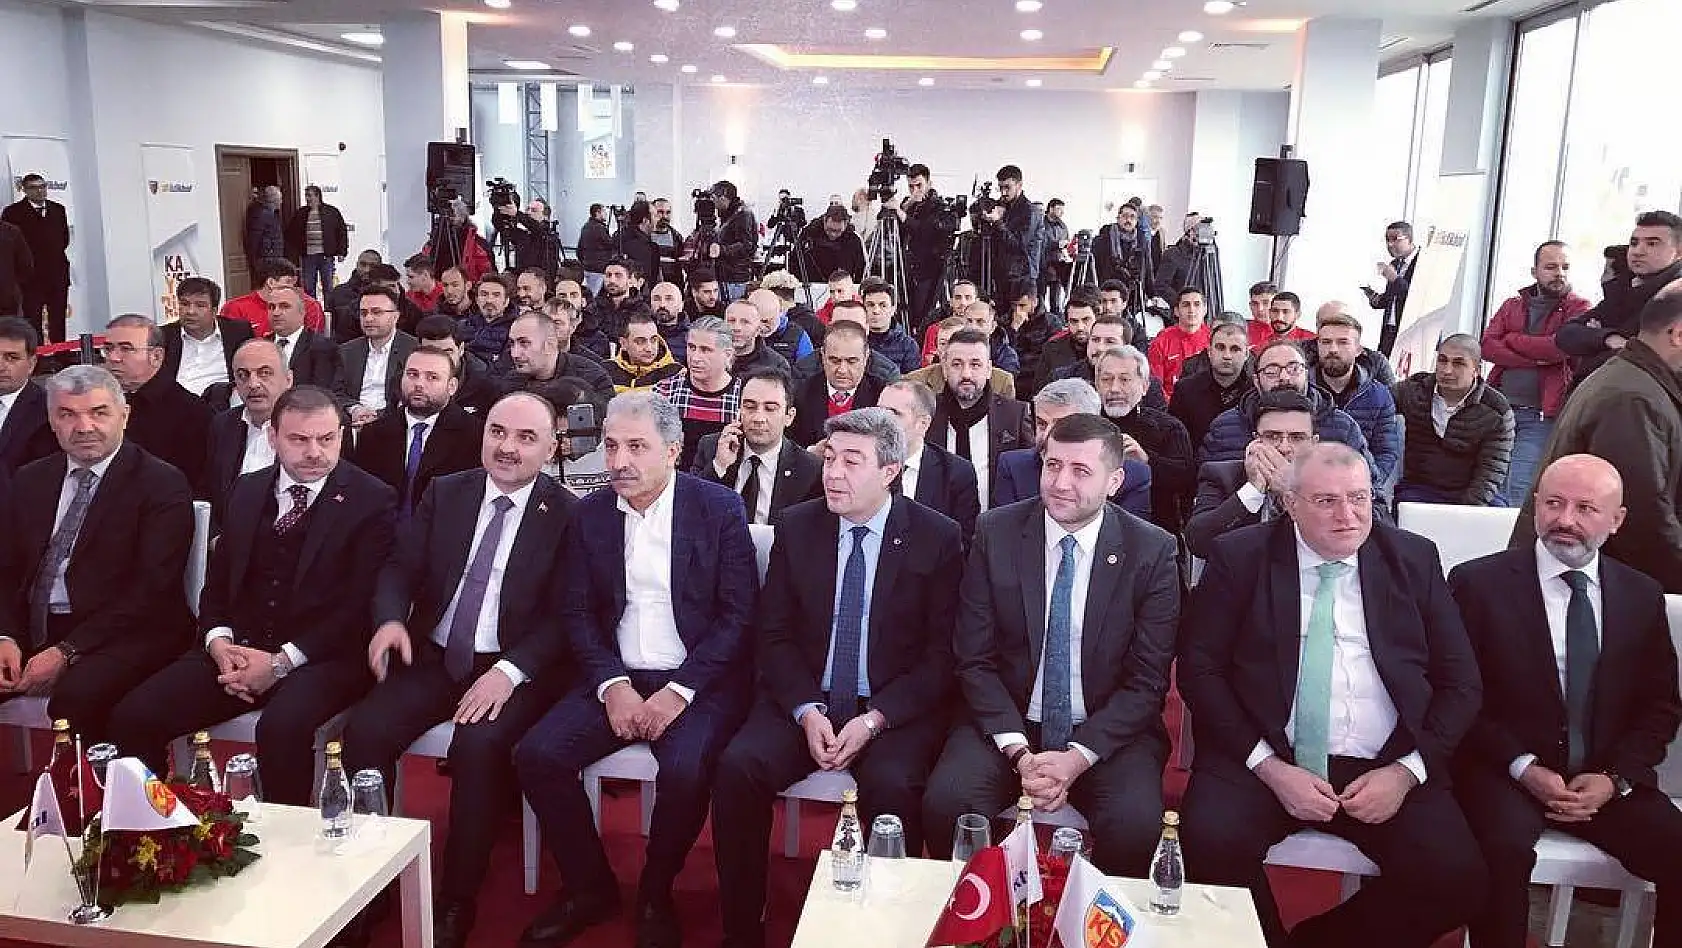 Kayserispor'un yeni ismi İstikbal Mobilya Kayserispor oldu